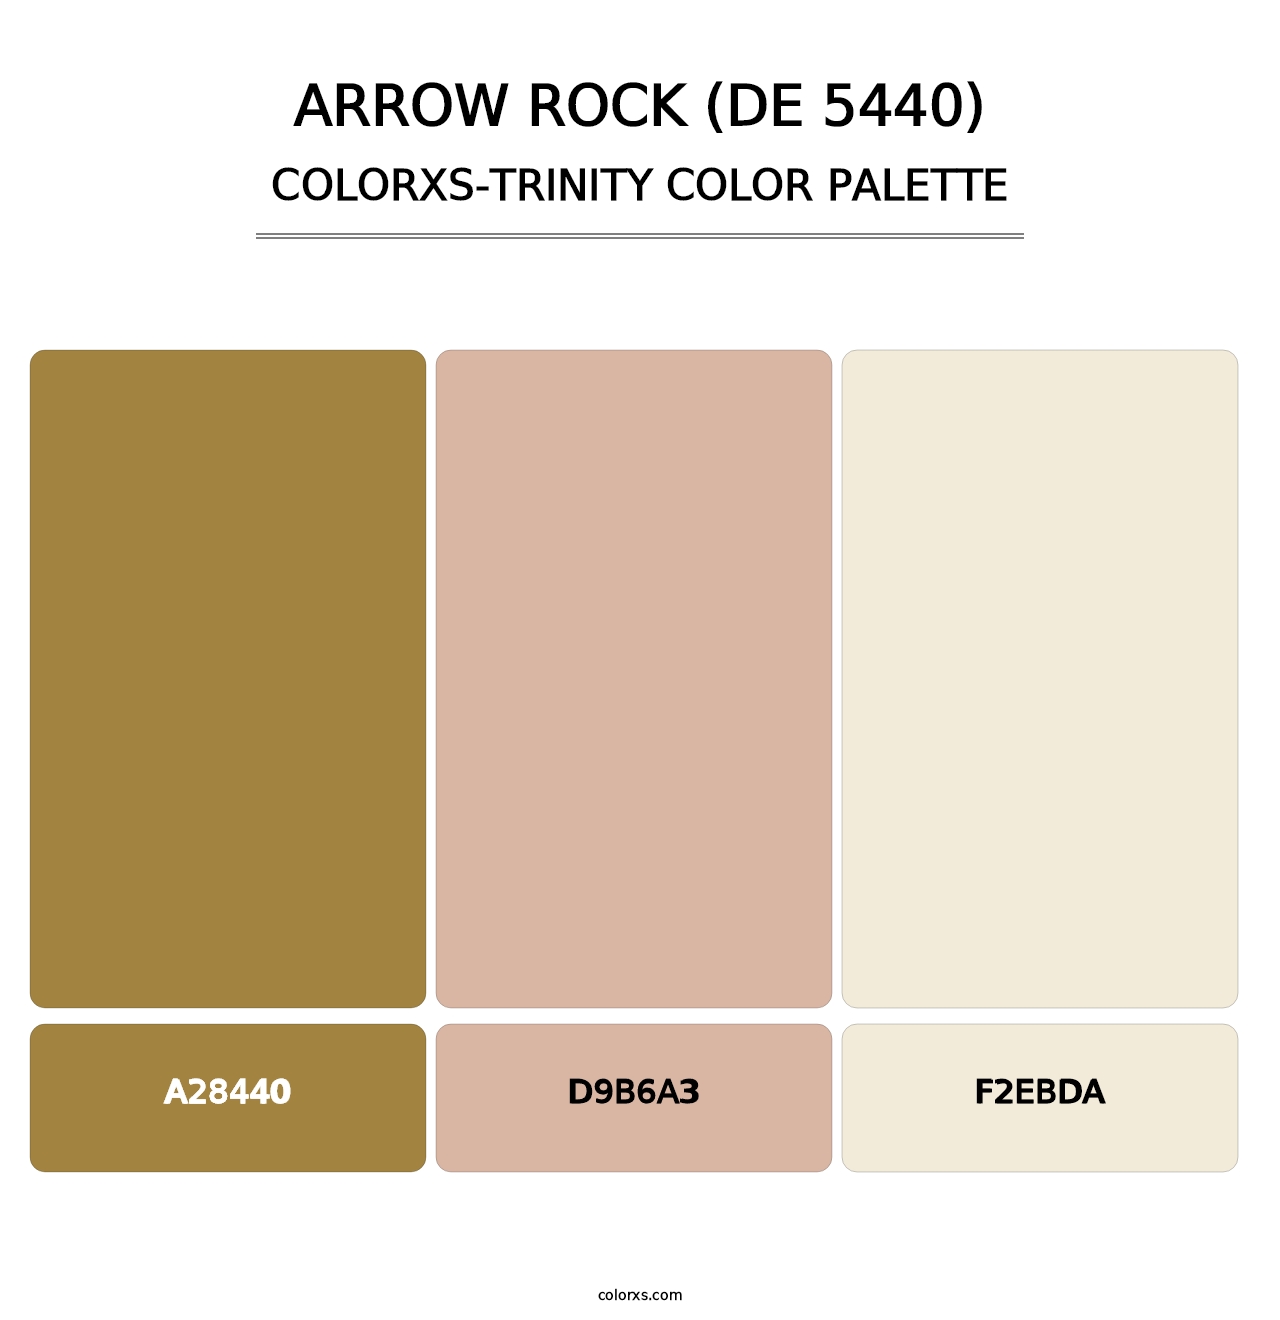 Arrow Rock (DE 5440) - Colorxs Trinity Palette